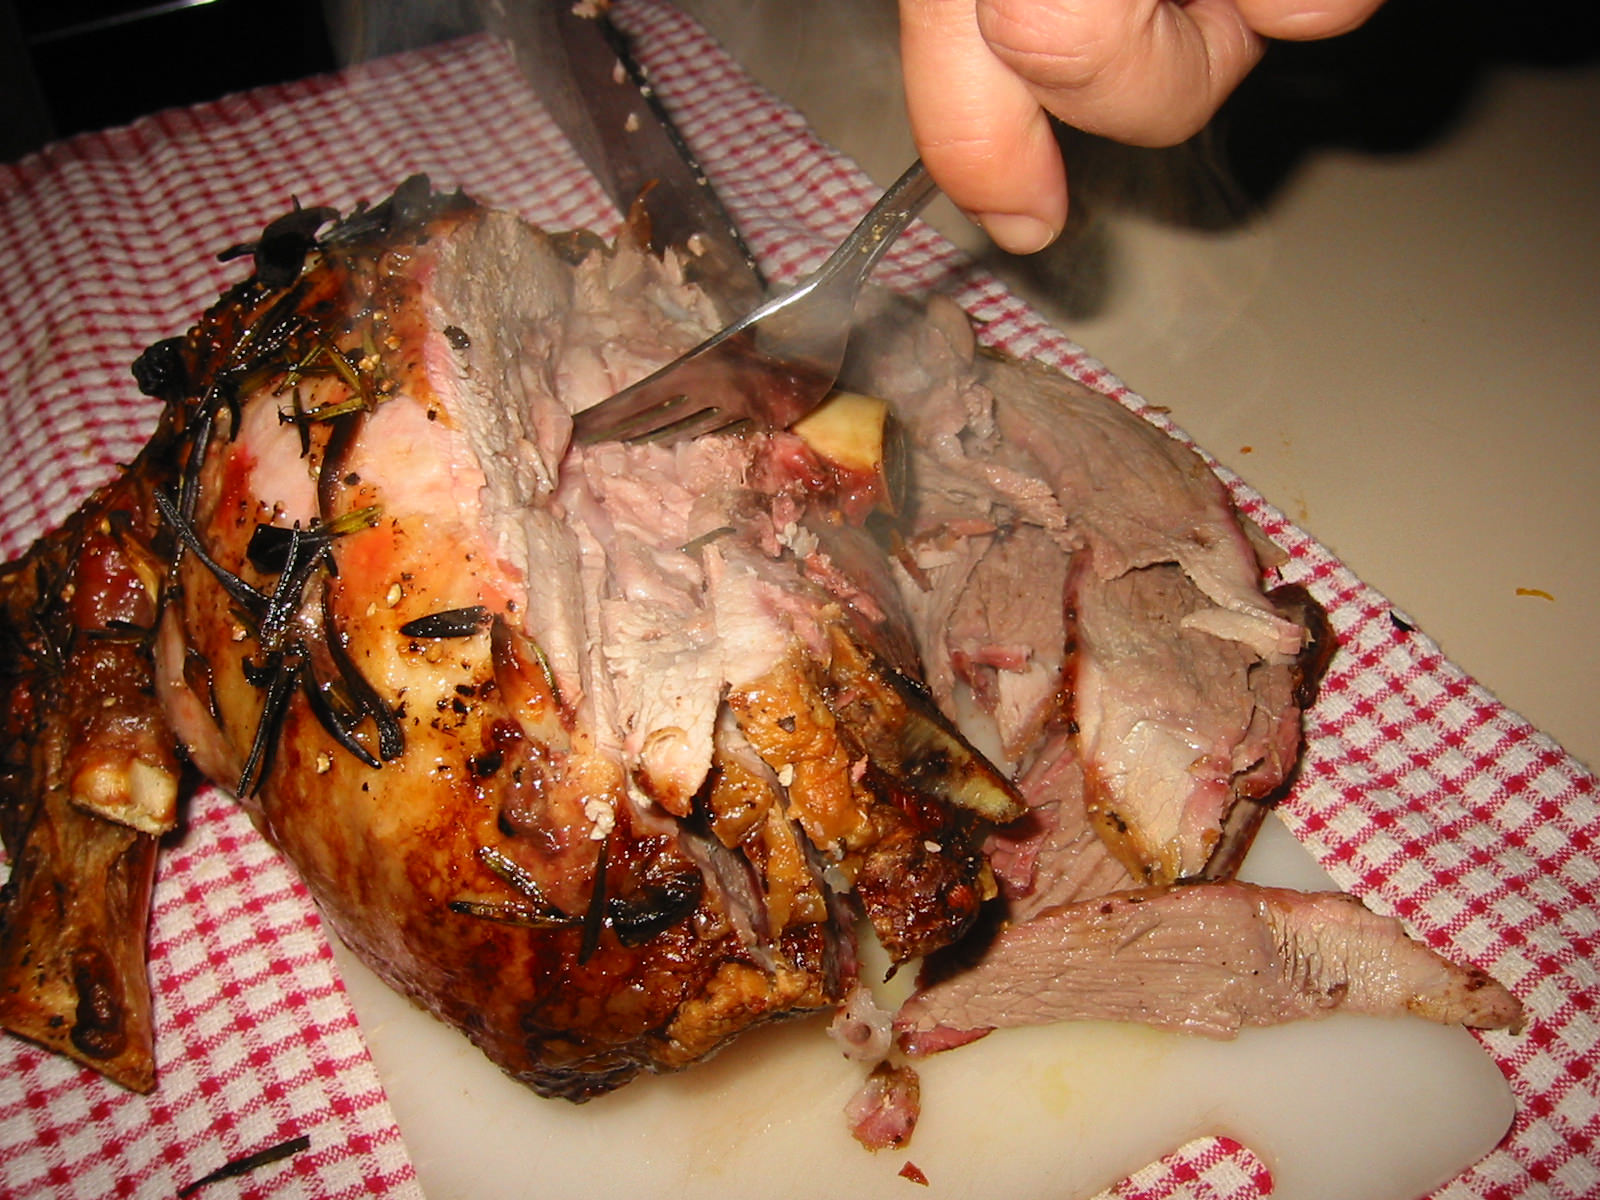 Carving the roast lamb